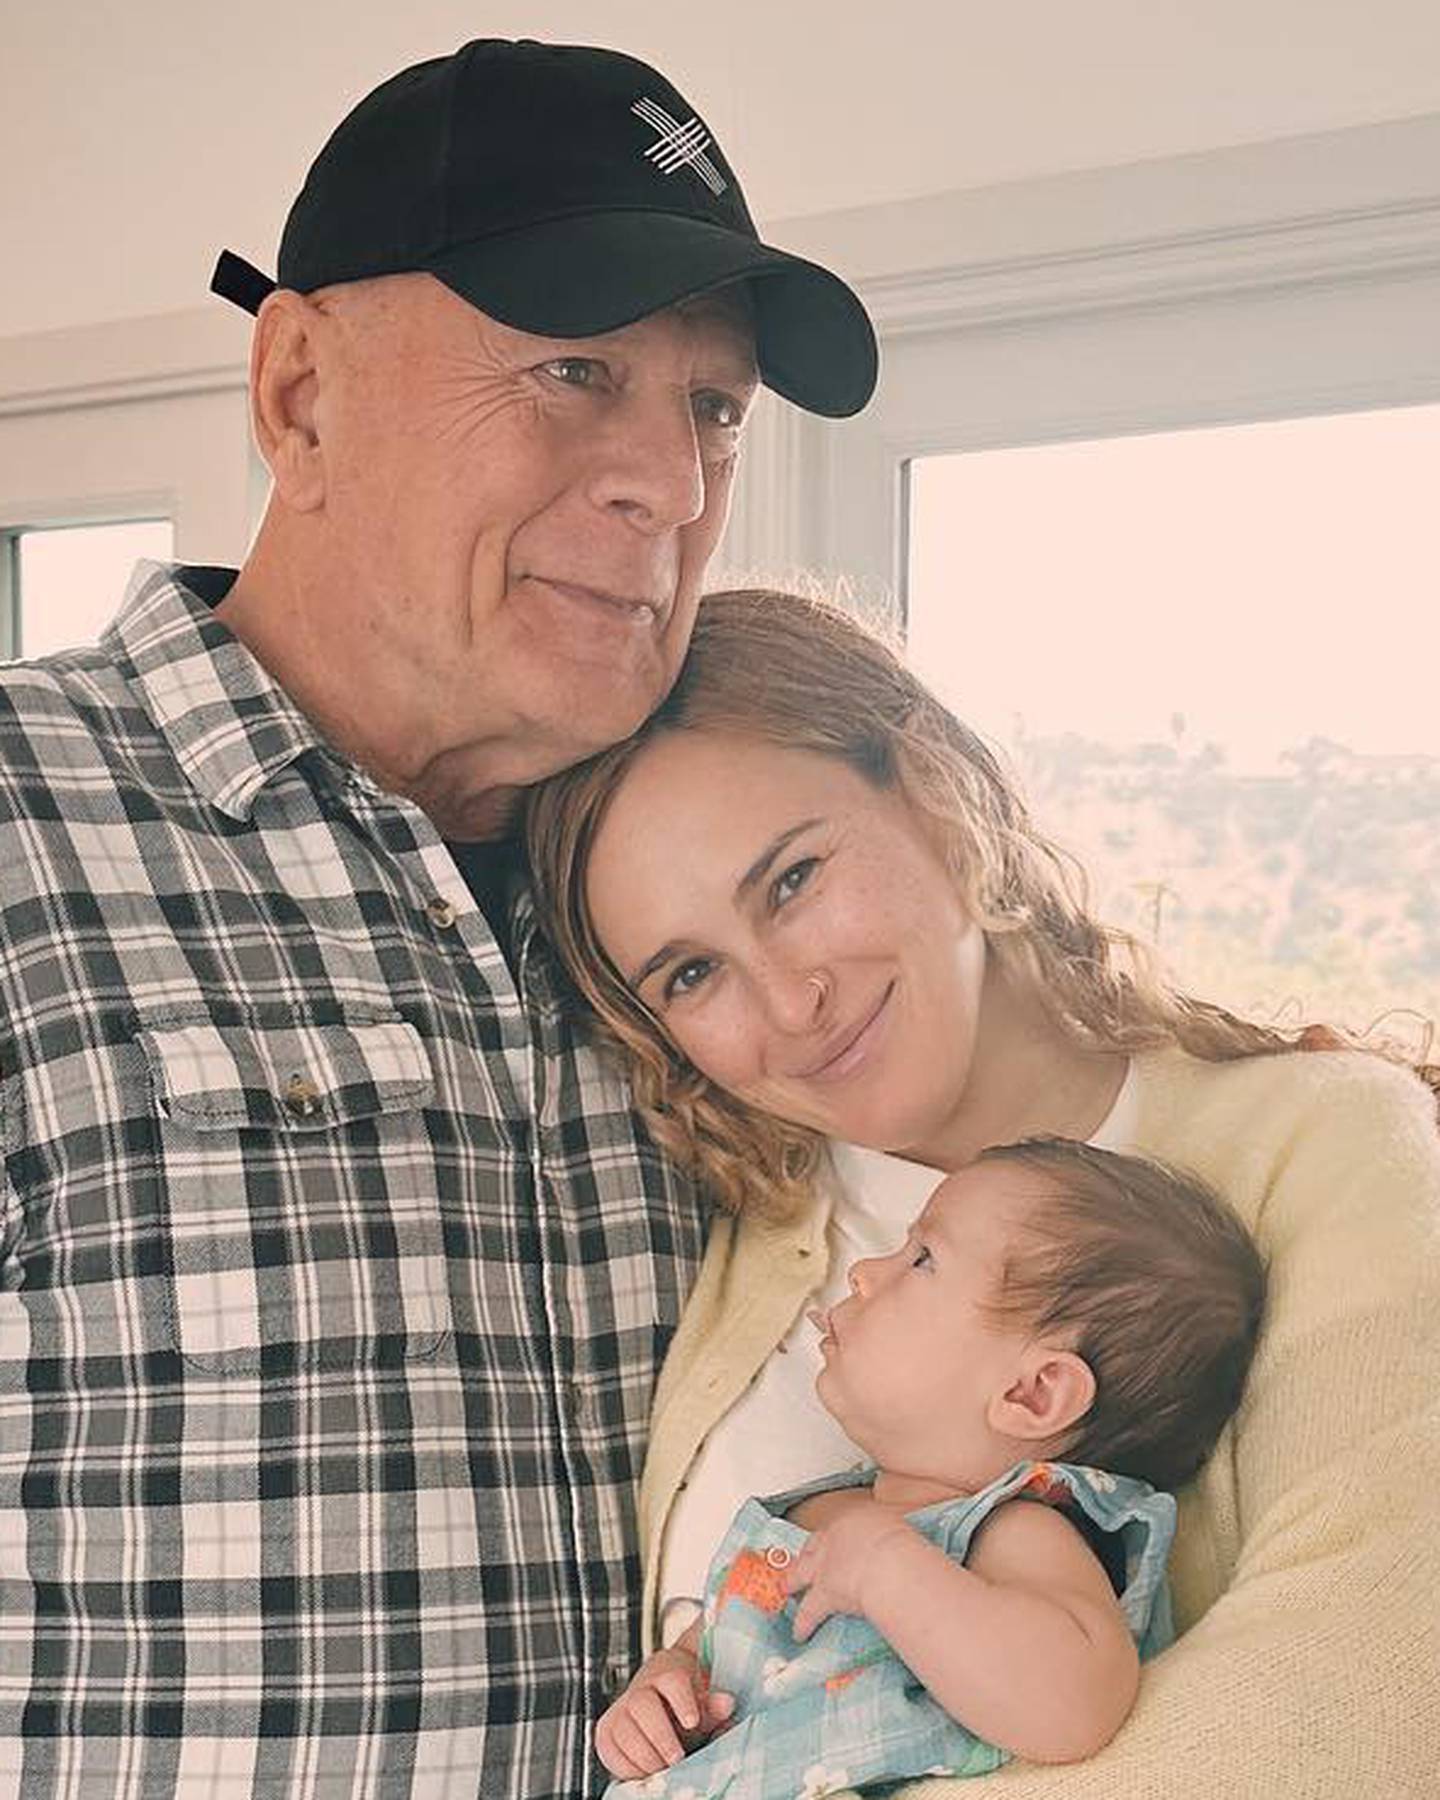 Bruce Willis uživa uz svoju prvu unučicu: 'Tako sam sretna što te imamo. Hvala ti za sve što jesi'